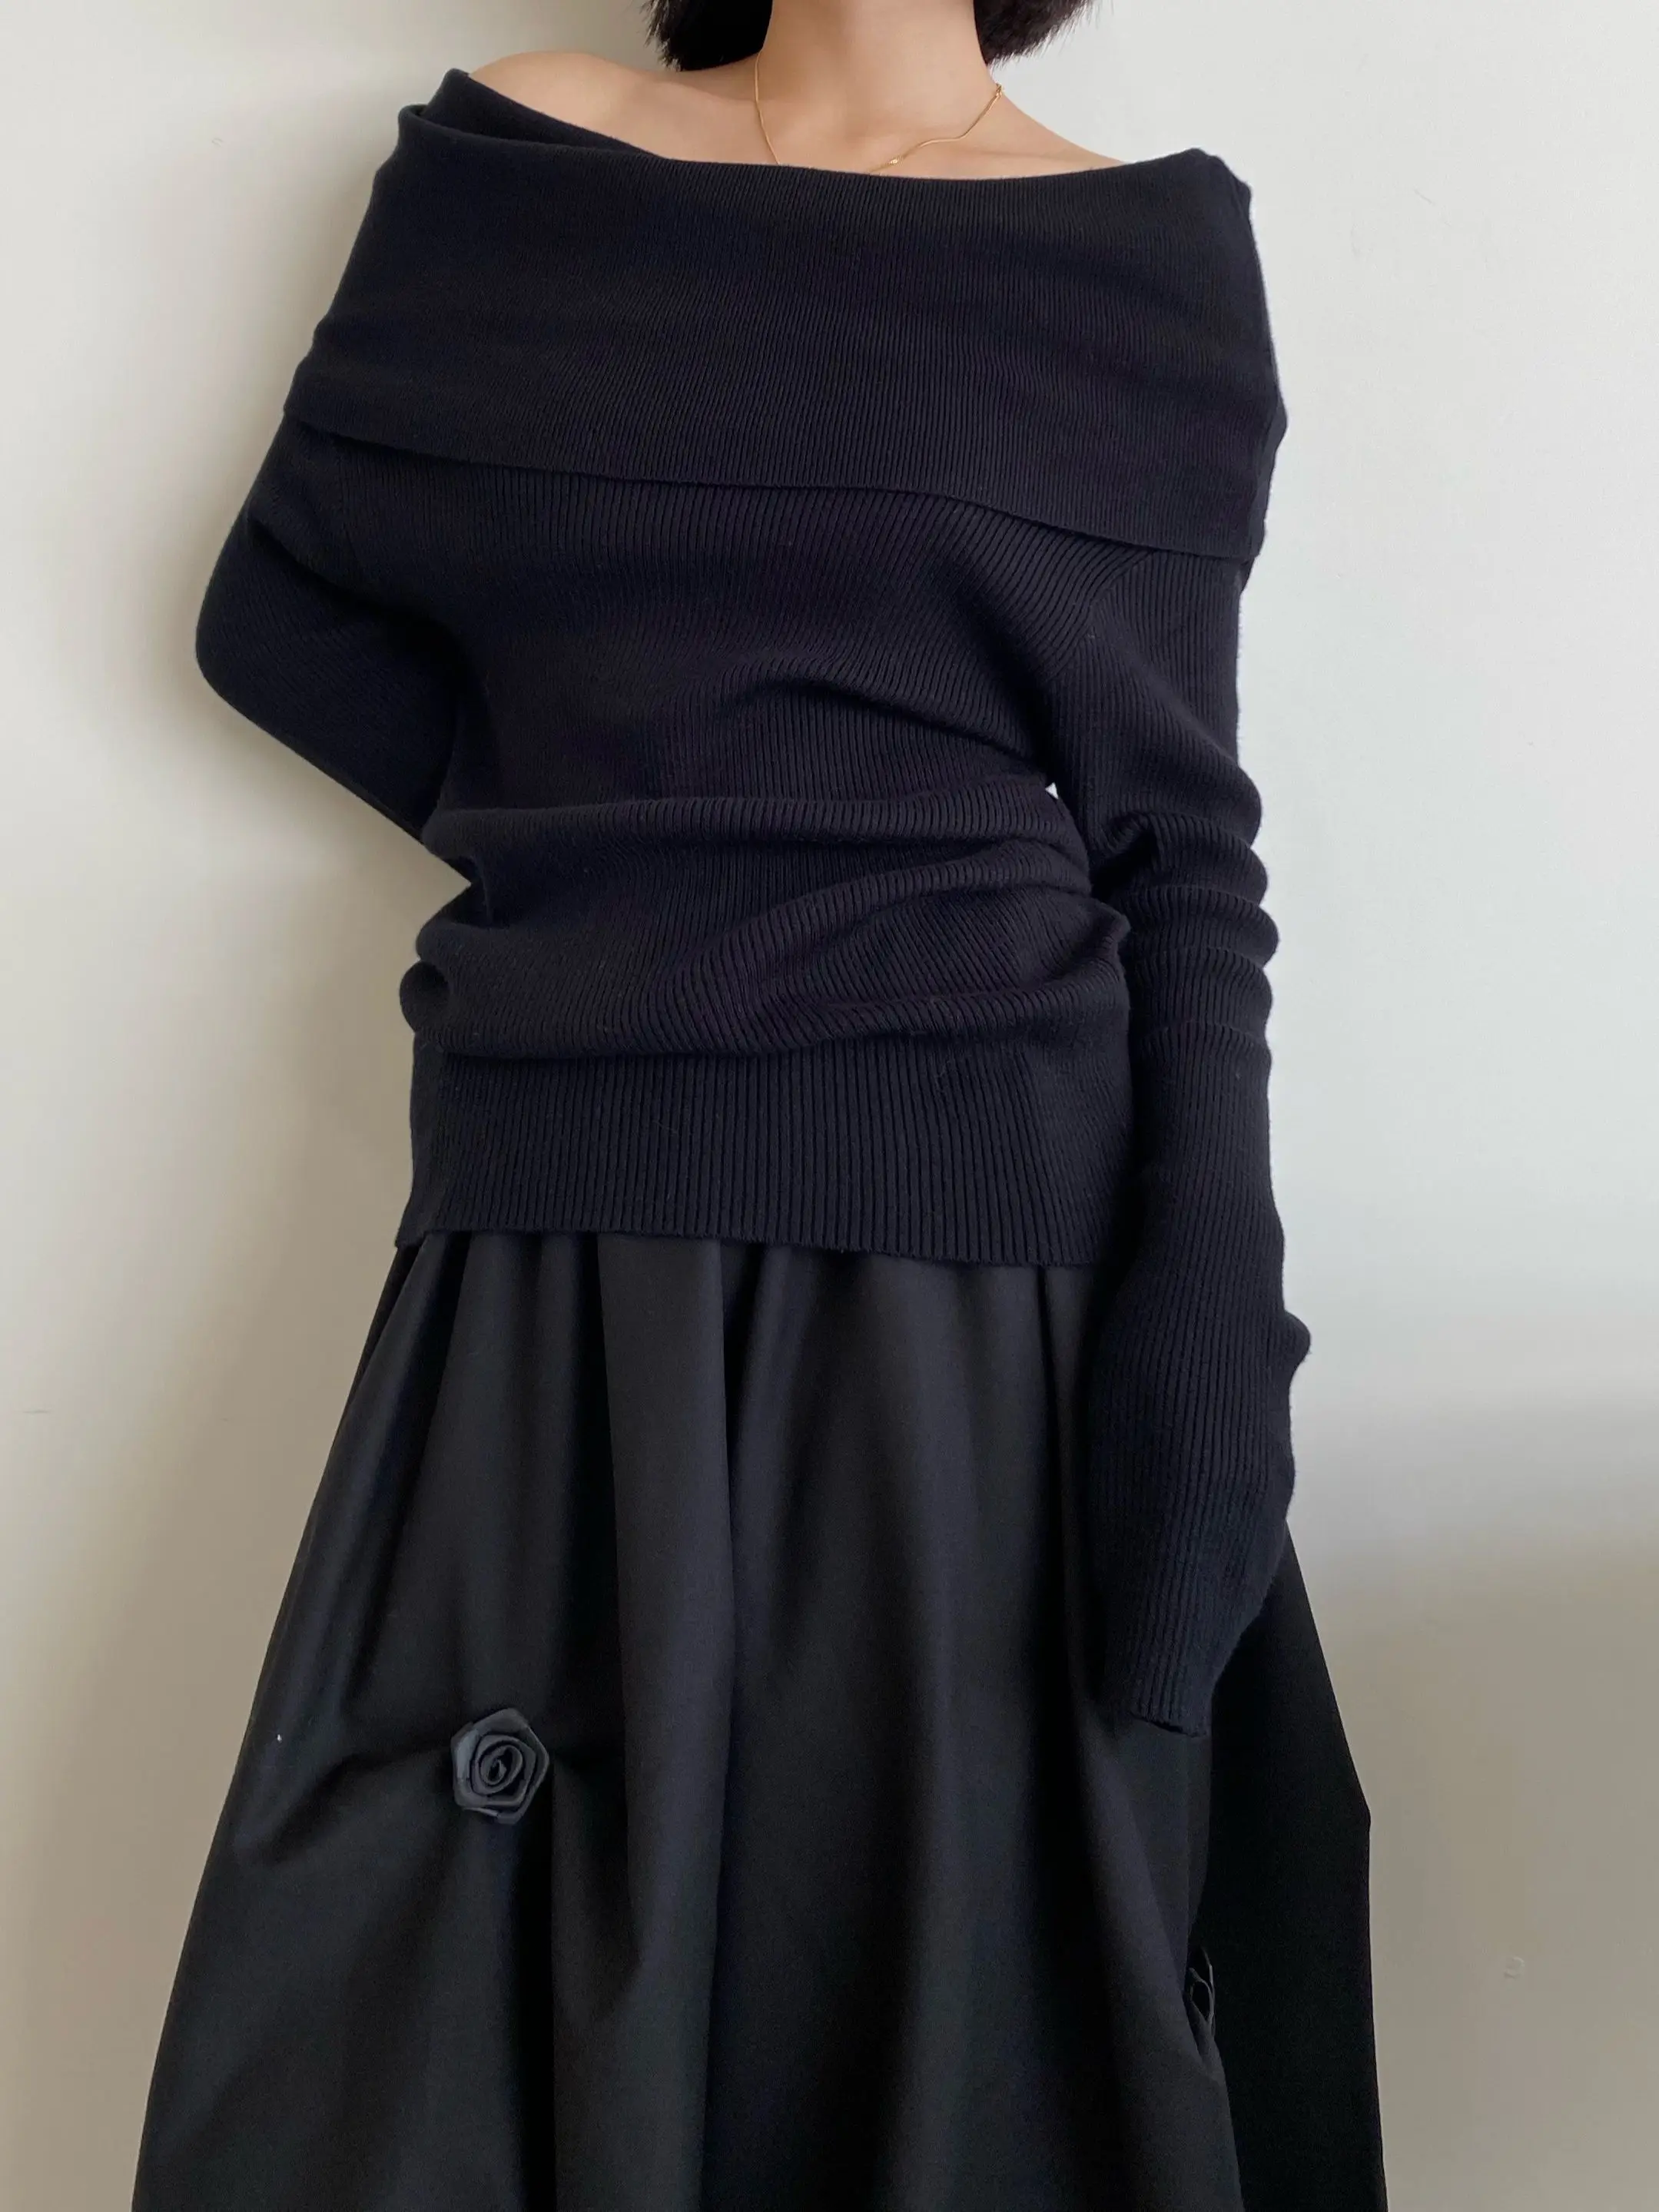 Wiosenne jesienne damskie swetry z odkrytymi ramionami w stylu Vintage z dzianiny jednolity sweter wysoka rozciągliwość Top C-038